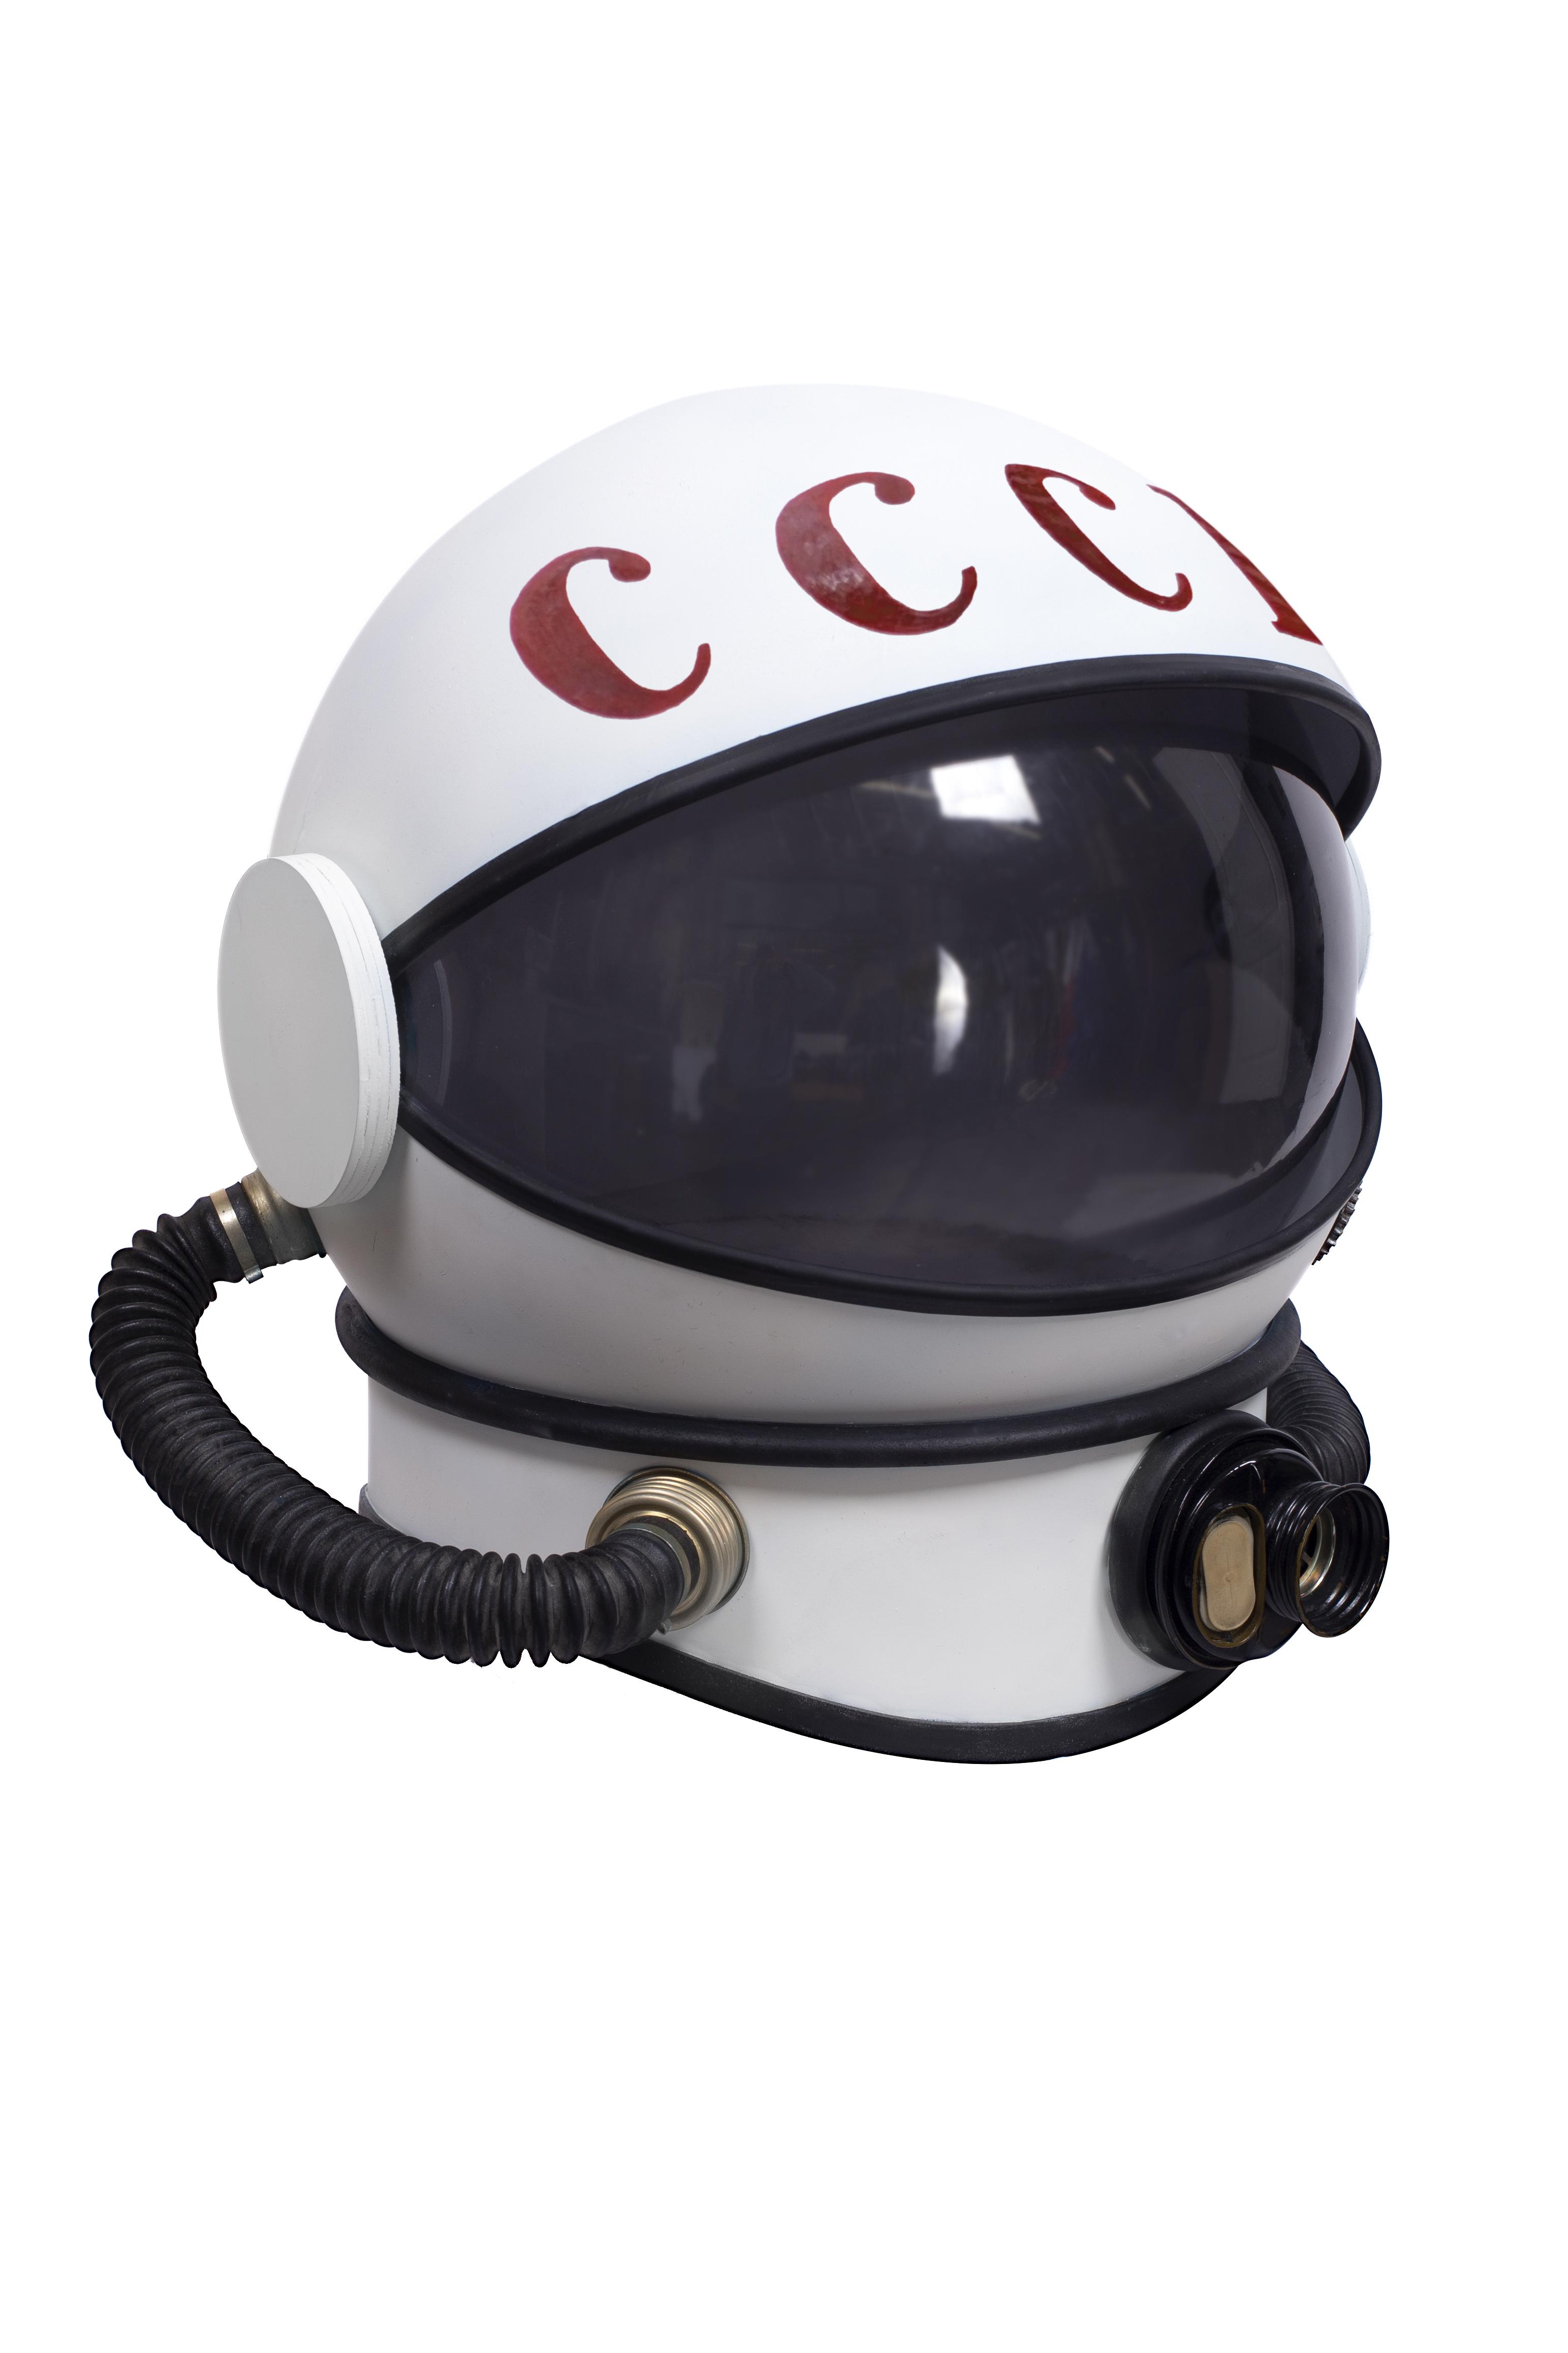 Шлем космонавта Изображения – скачать бесплатно на Freepik